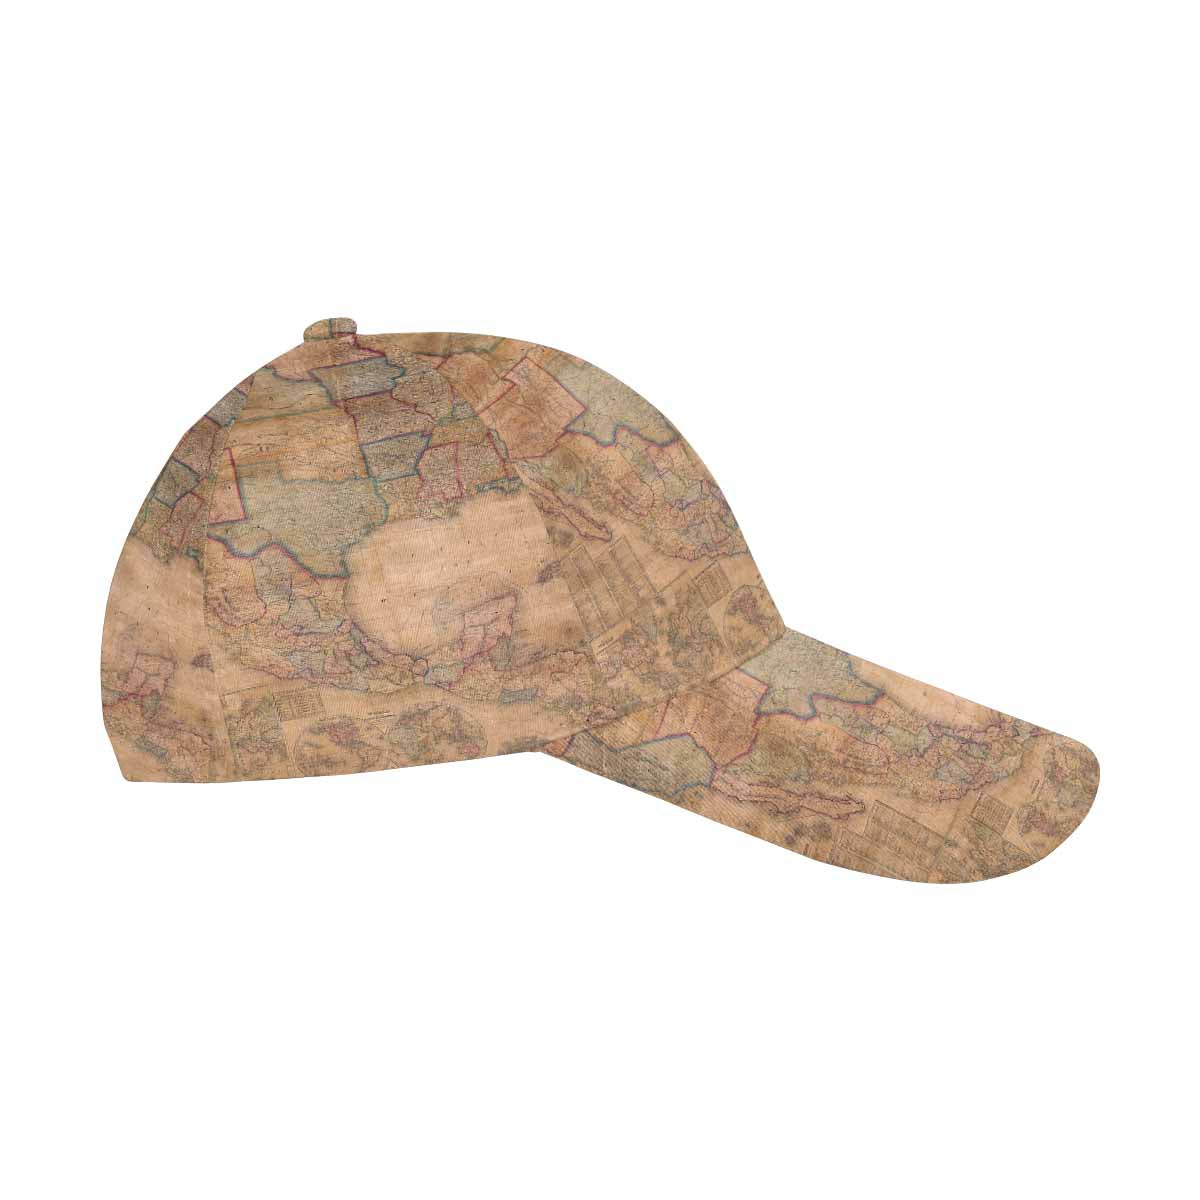 Antique Map design dad cap, trucker hat, Design 28